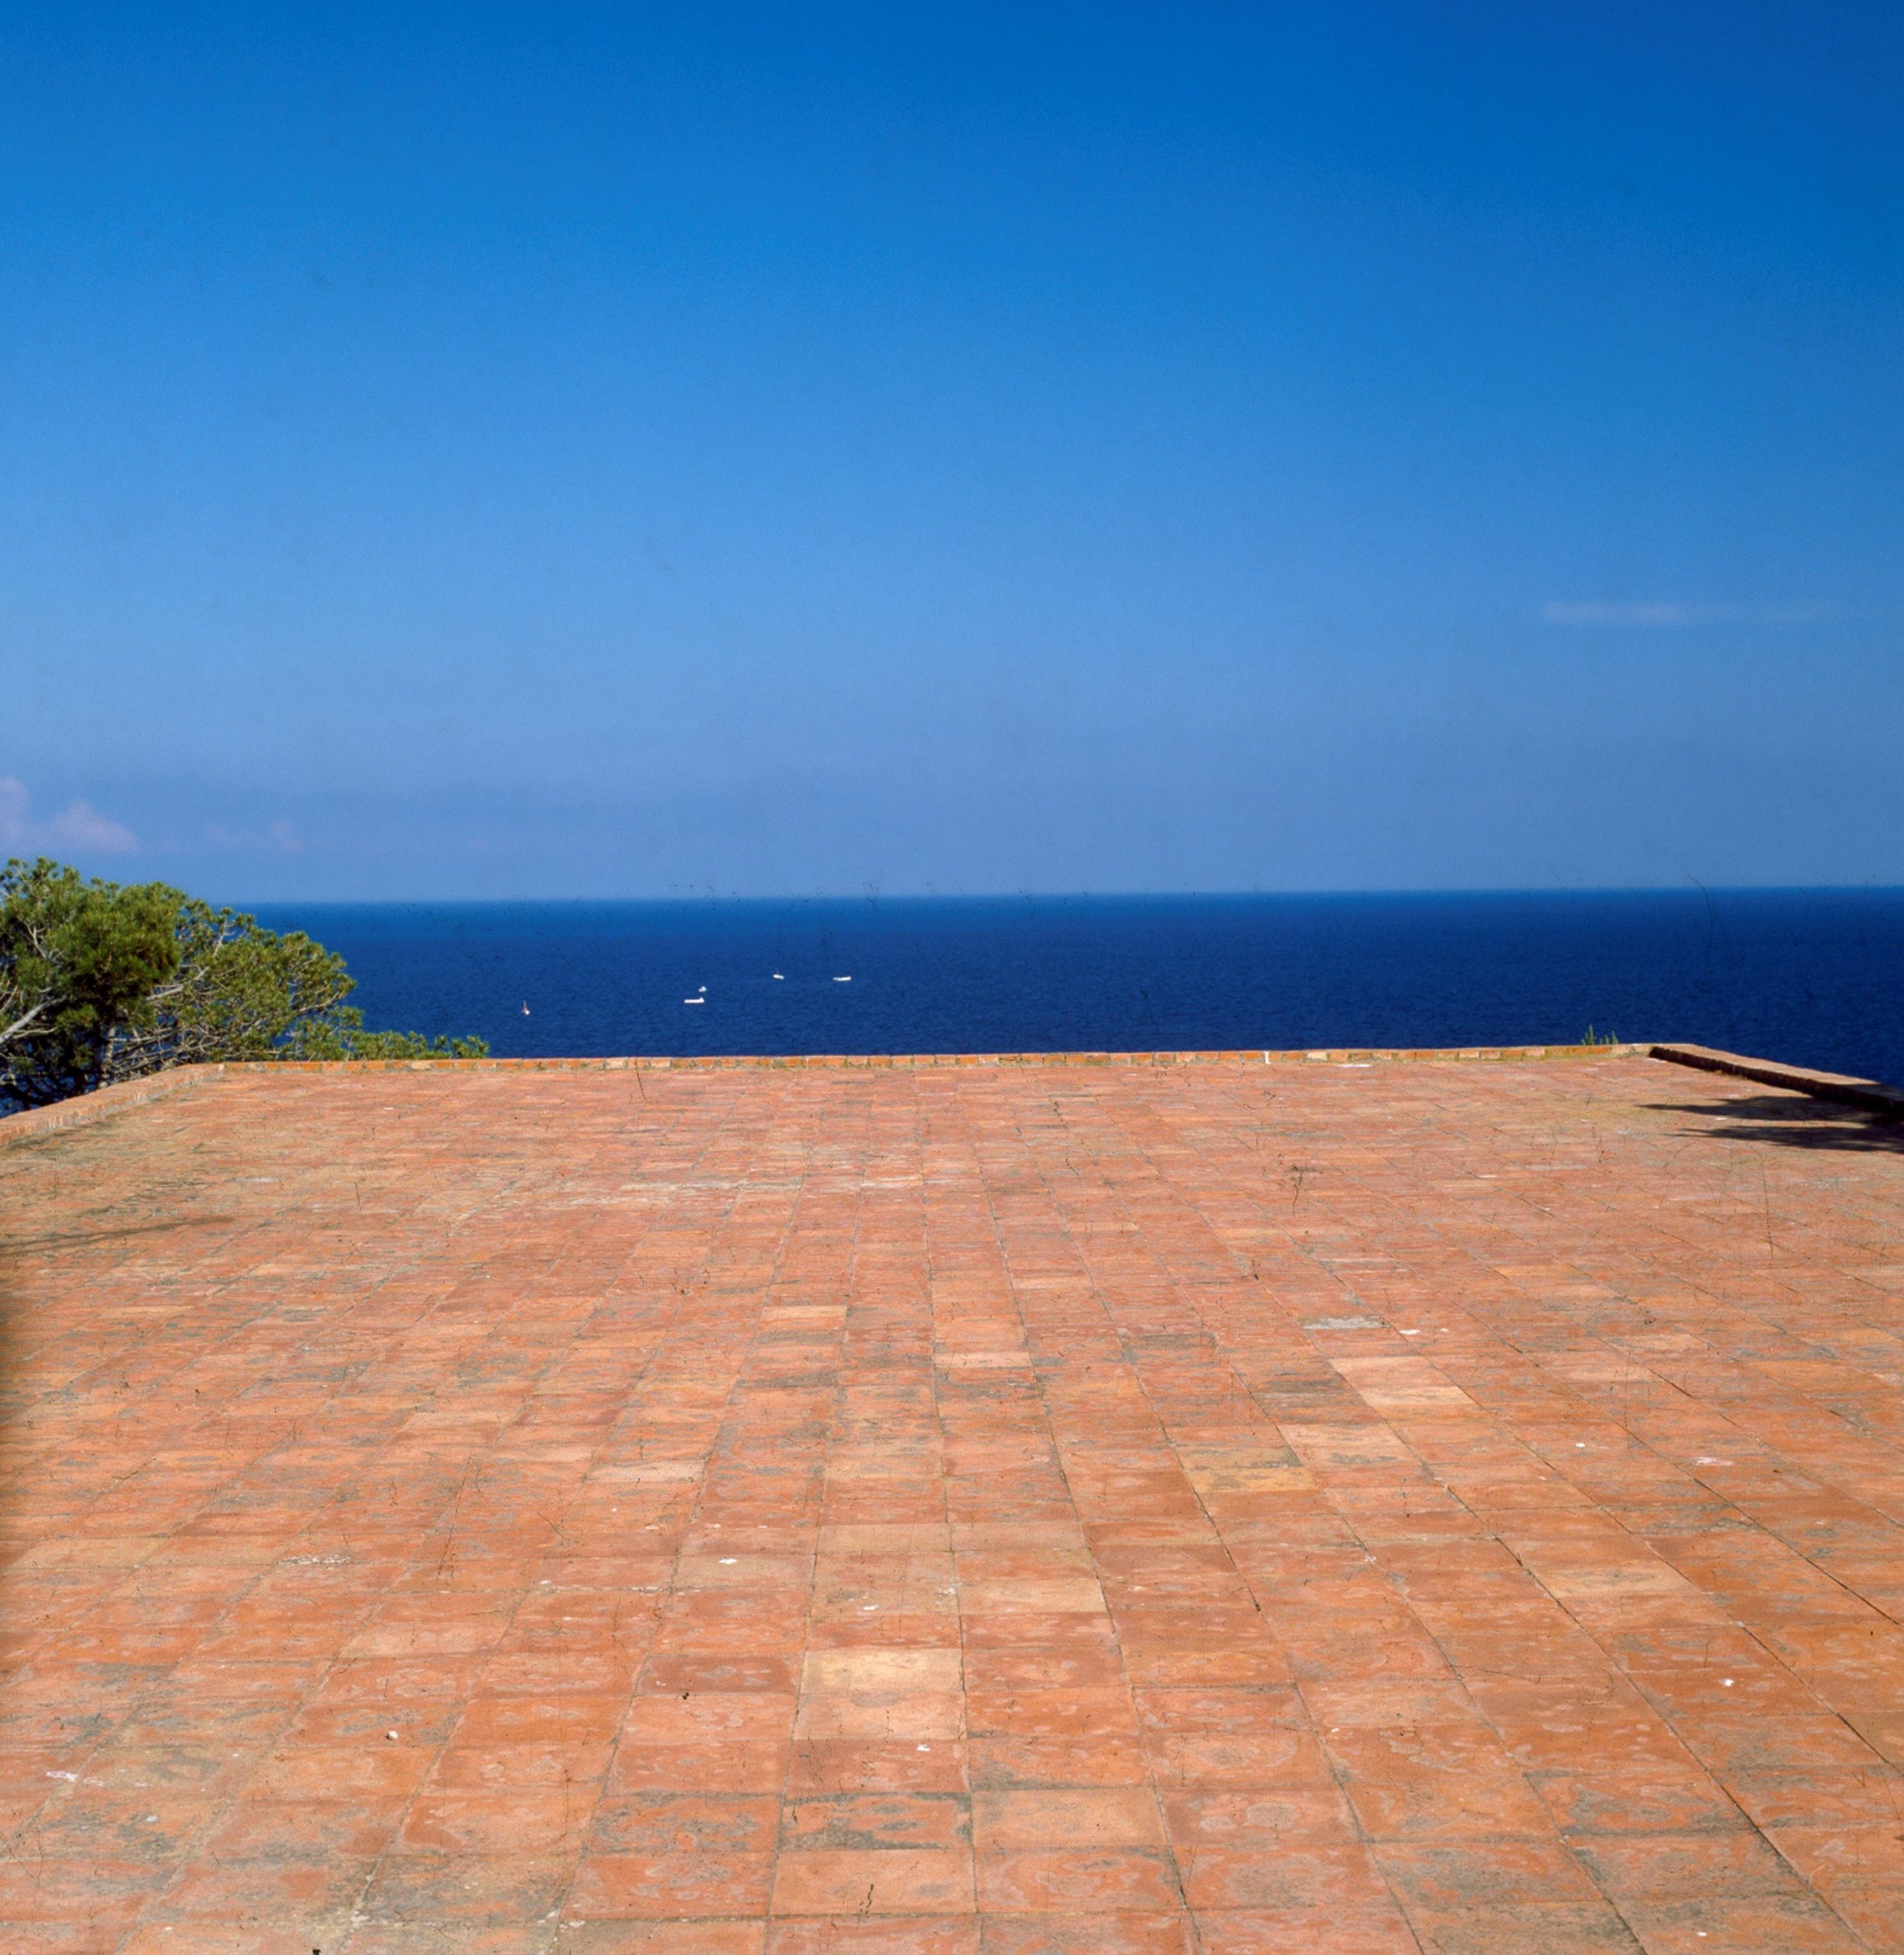 Una finestra sul mare di Capri. Un progetto ad hoc per NOMAD, parola a Pilar Pandini